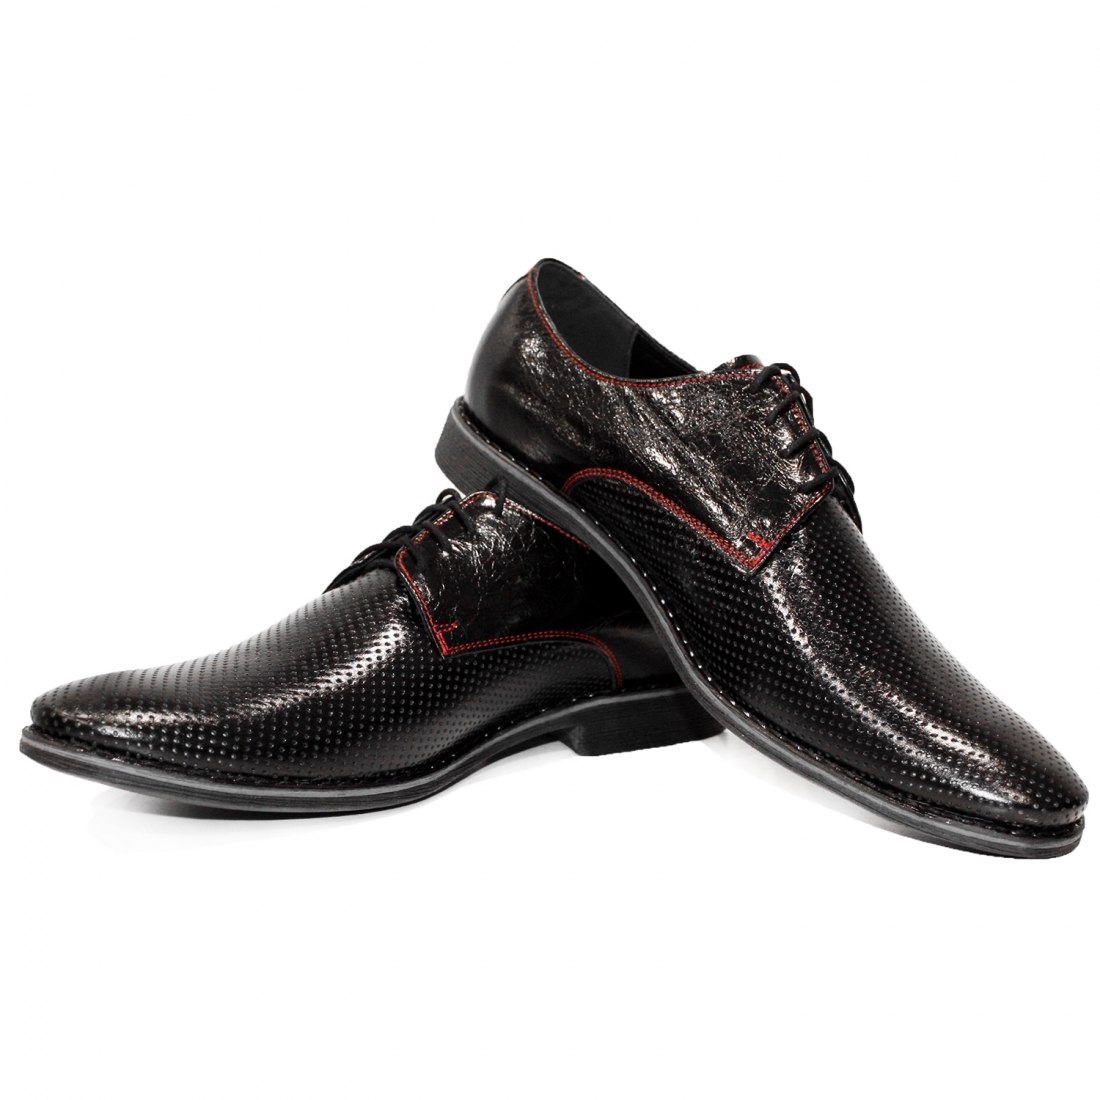 Modello Litt - Scarpe Classiche - Handmade Colorful Italian Leather Shoes